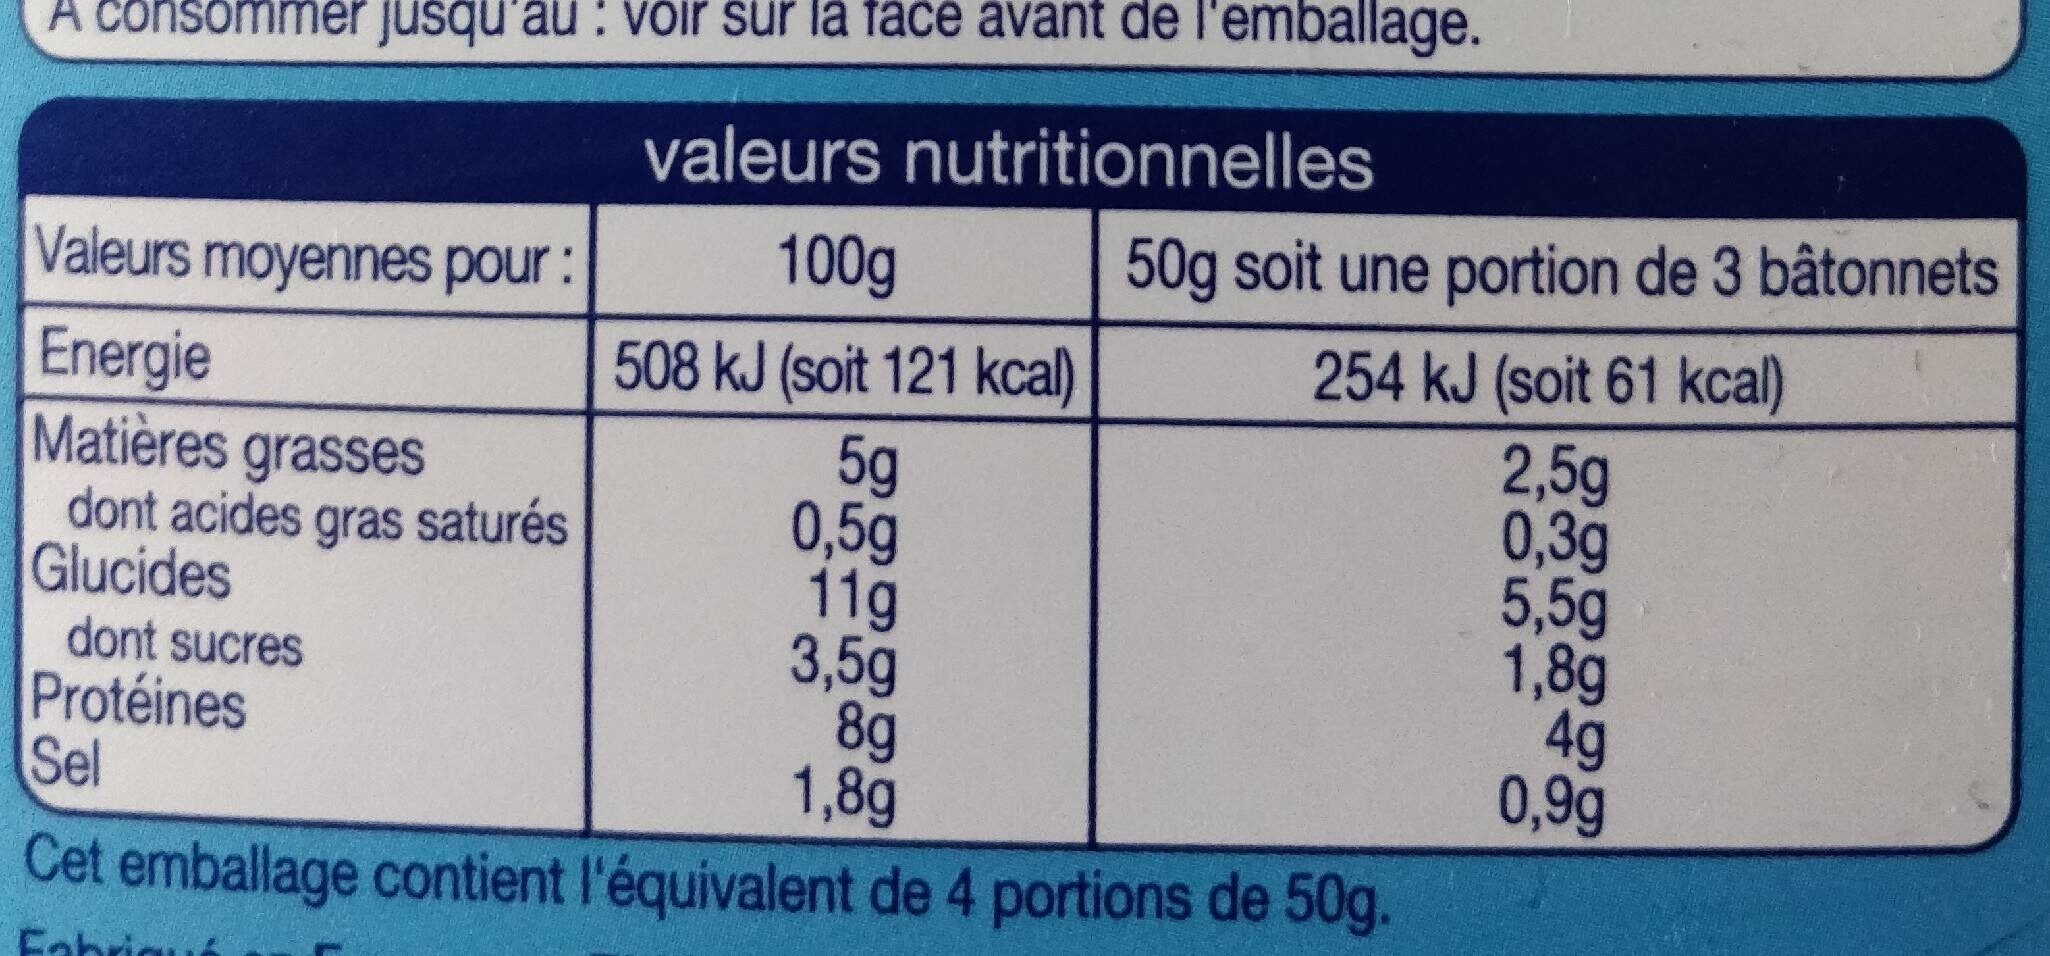 12 surimi - Tableau nutritionnel